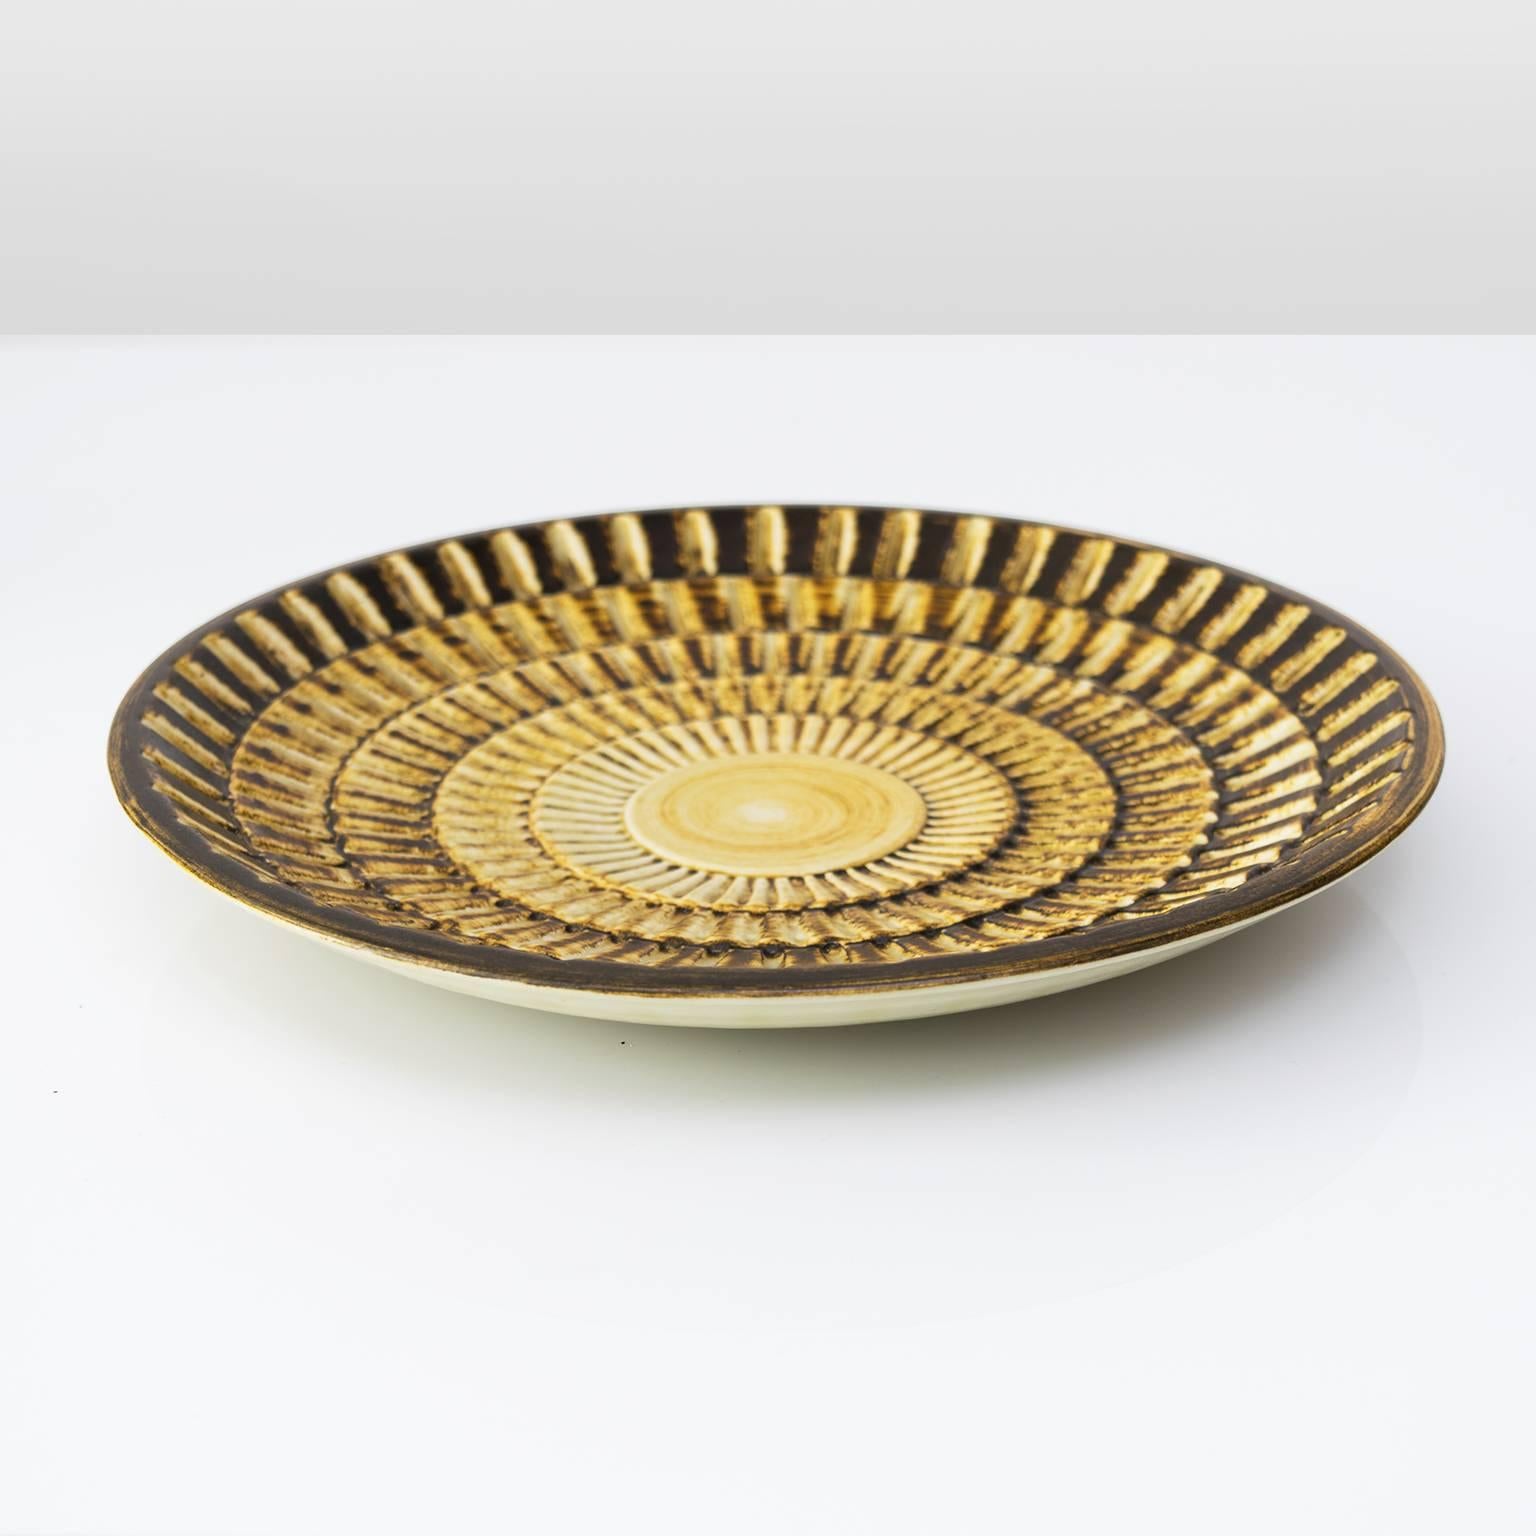 Glazed Scandinavian Modern Textured Bowl 'Gold' by Gertrud Lonegren